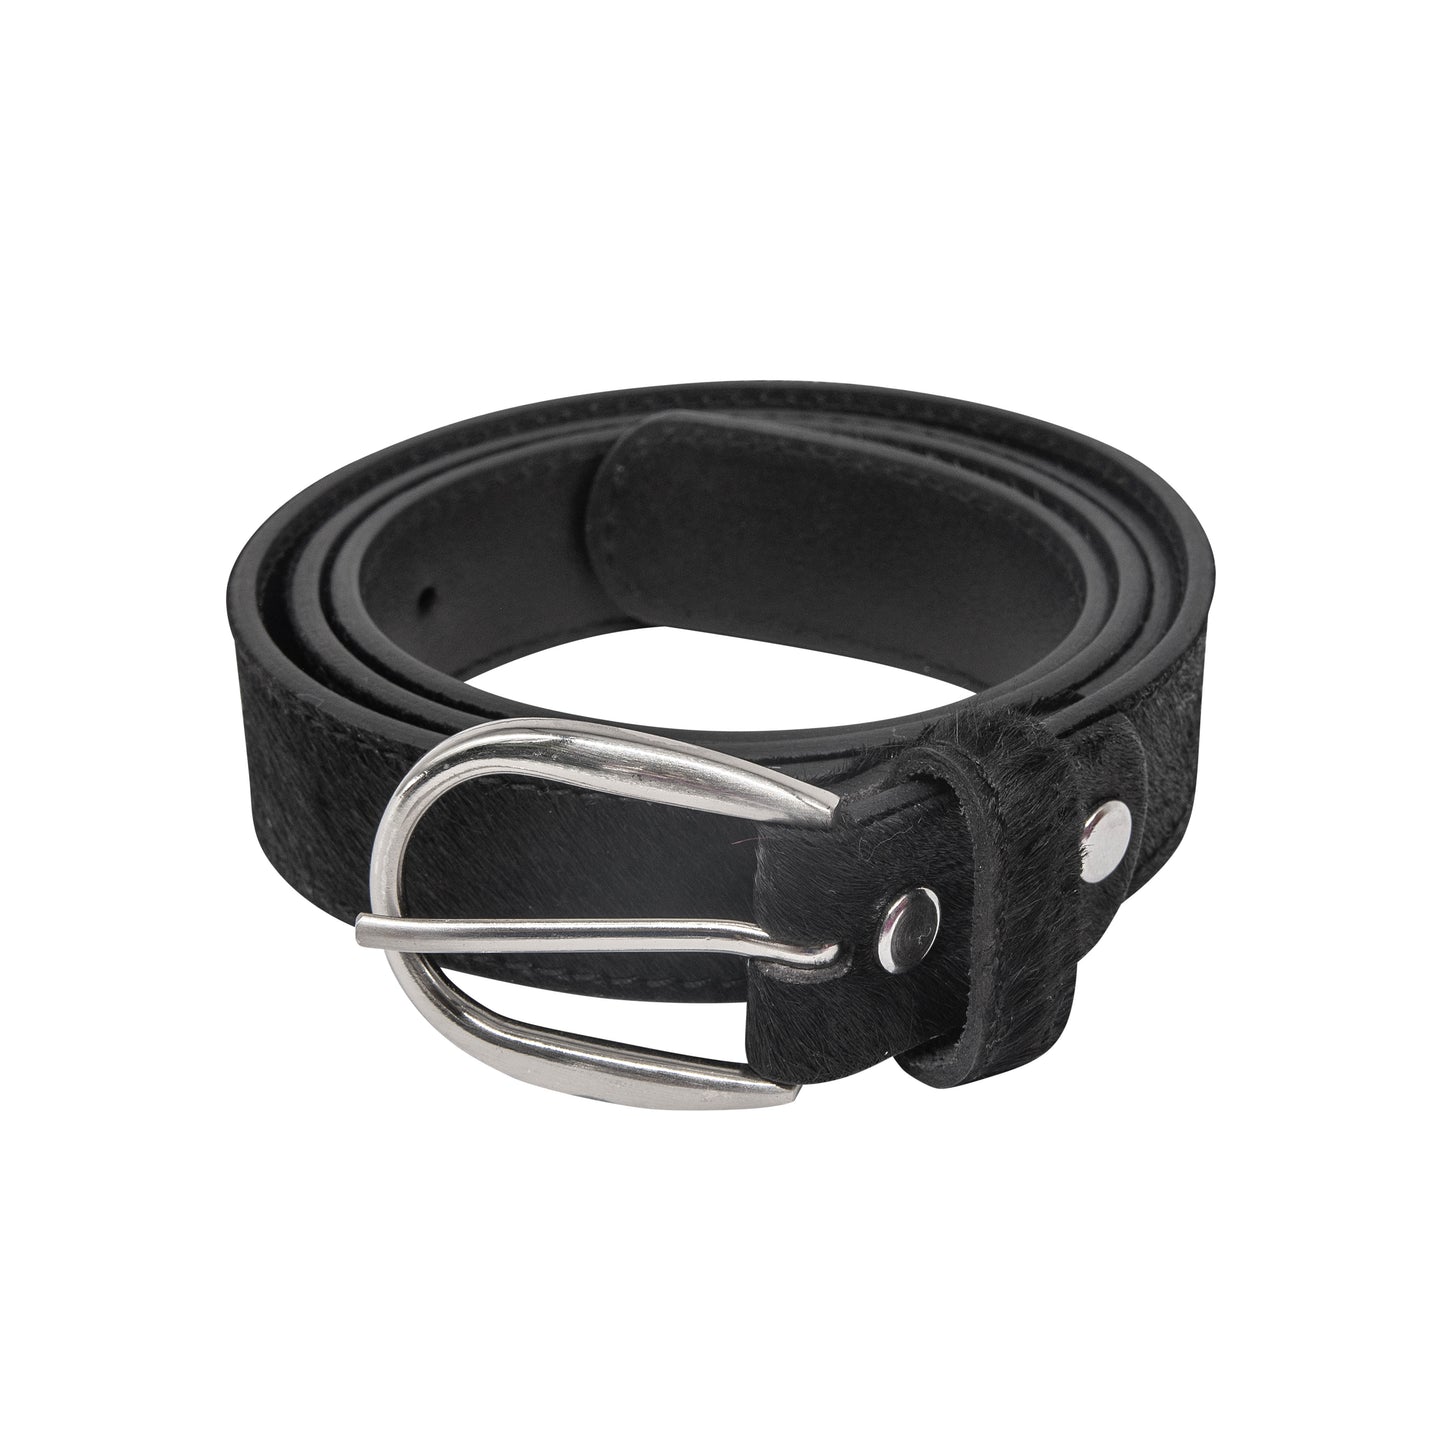 Black hair-on-hide women leather belt